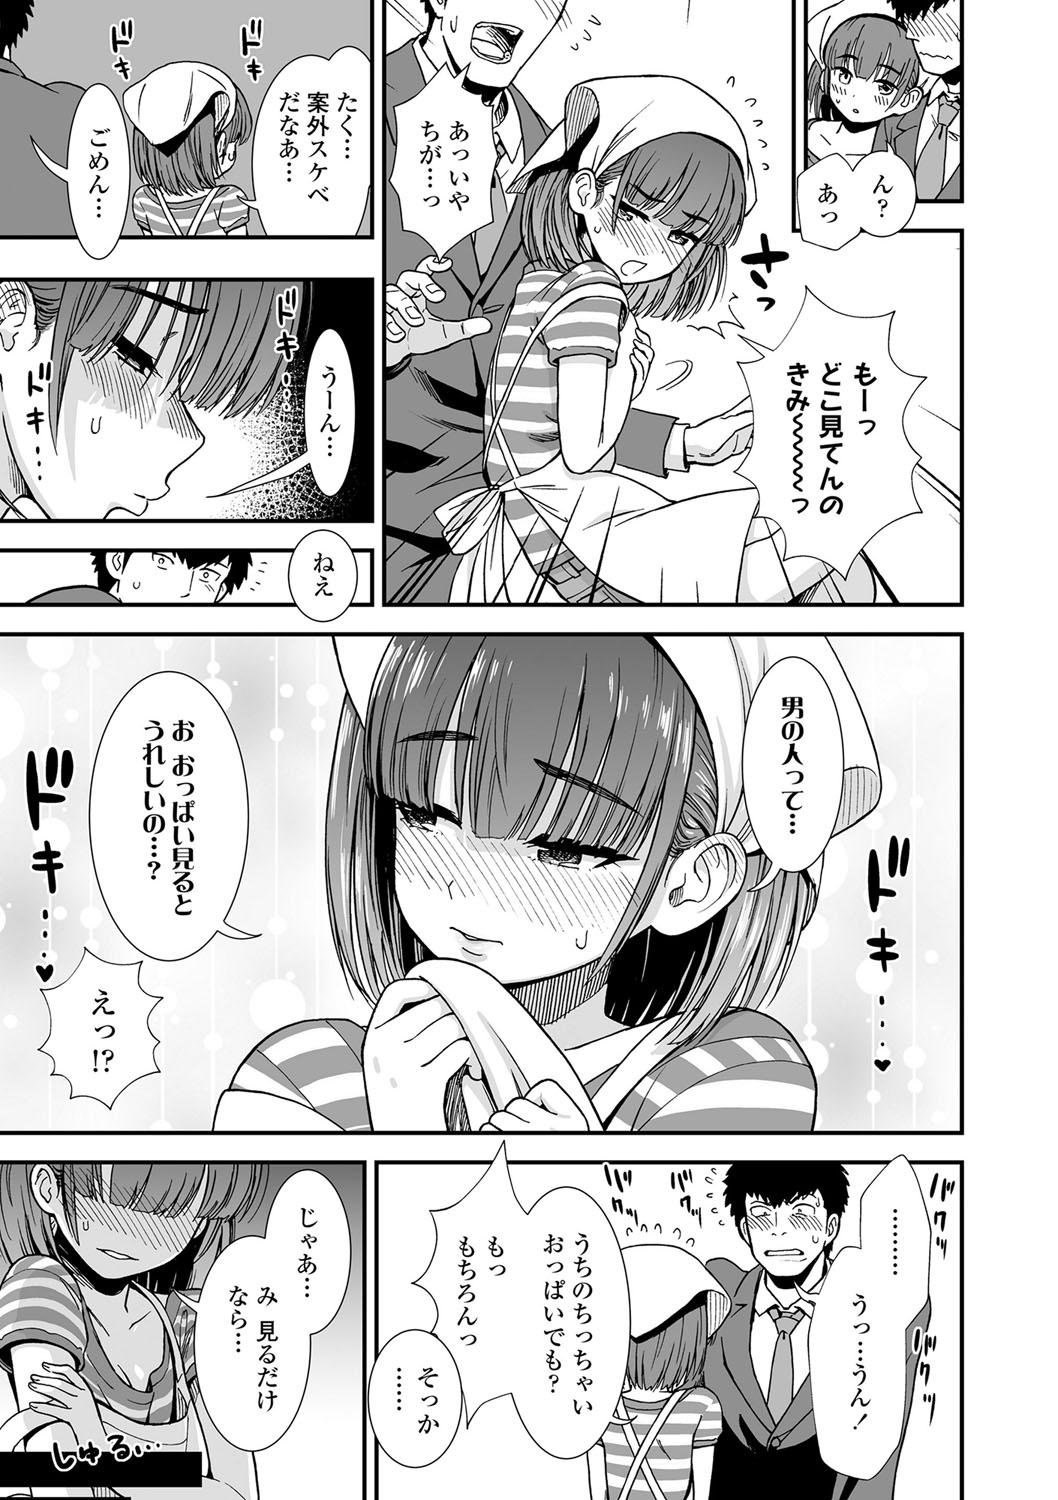 Screaming Ore wa Kuzu dakara koso Sukuwareru Kenri ga Aru! Femdom - Page 10